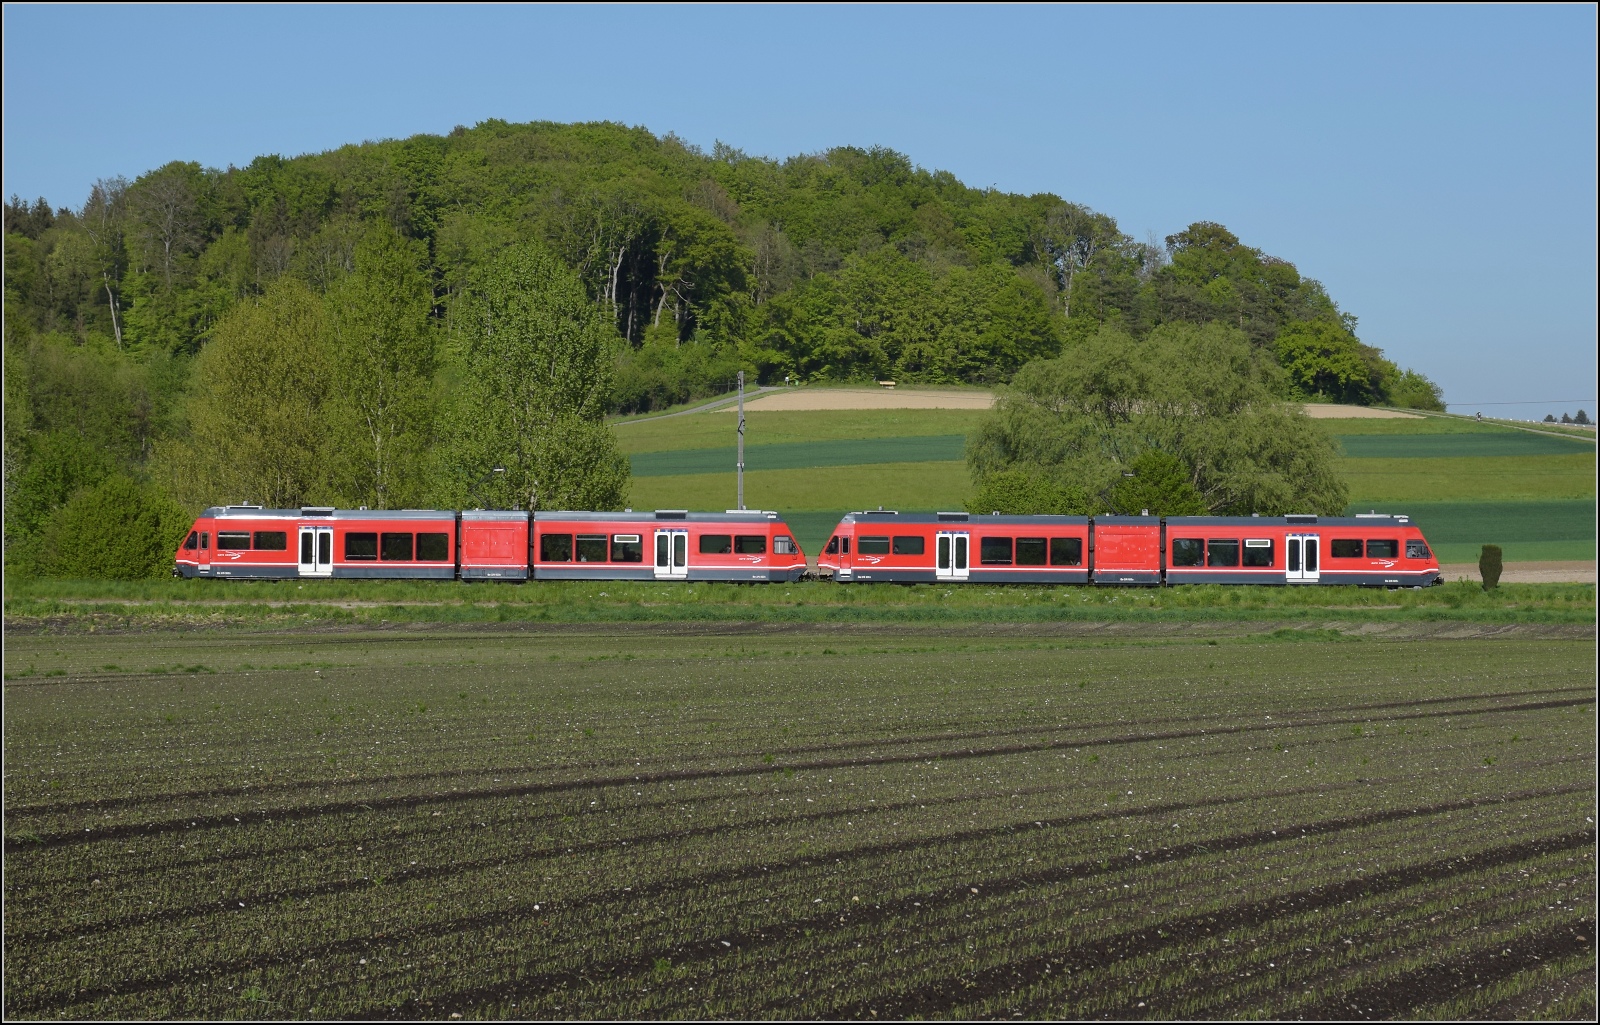 Auf der Biel-Täuffelen-Ins Bahn.

GTW Be 2/6 505 und GTW Be 2/6 503 der ASm bei Büttelen. April 2022.